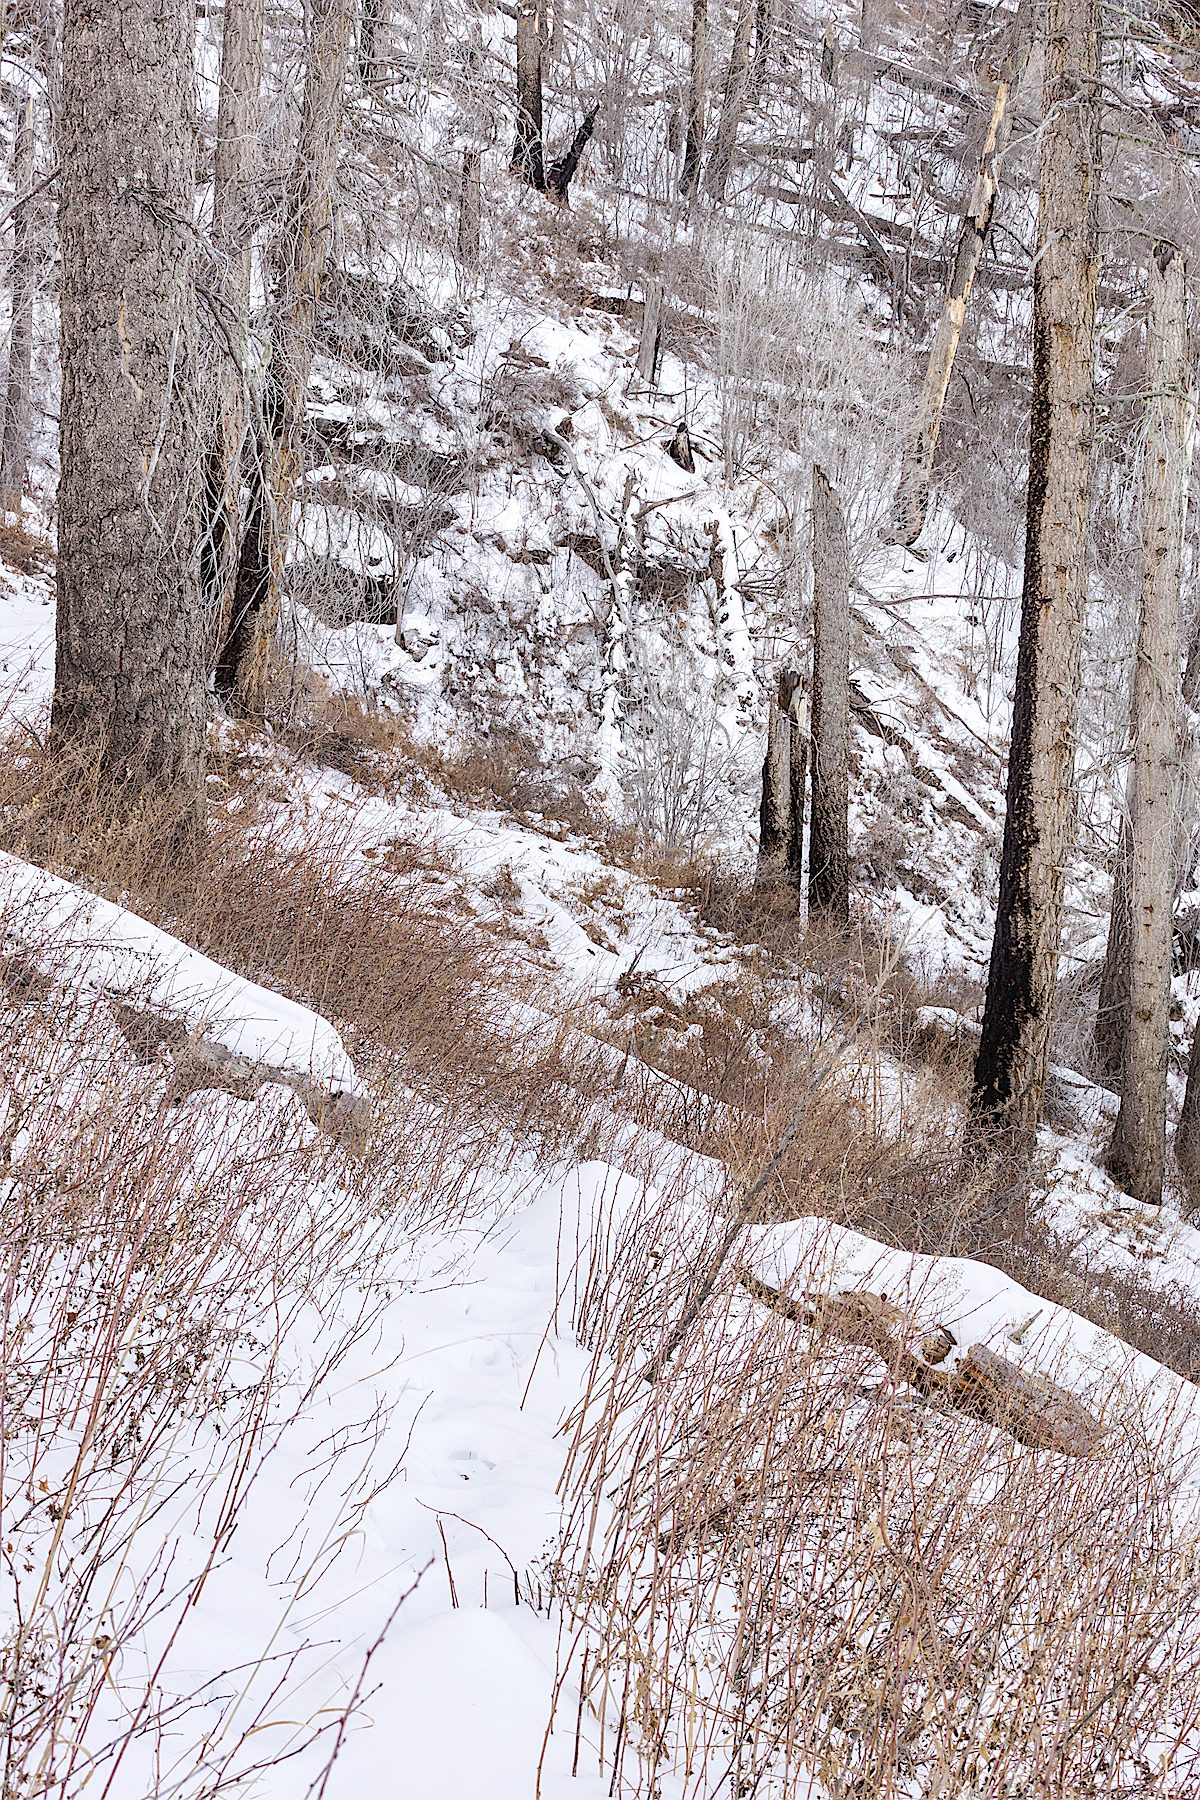 Snow on the Butterfly Trail below Mount Bigelow. December 2014